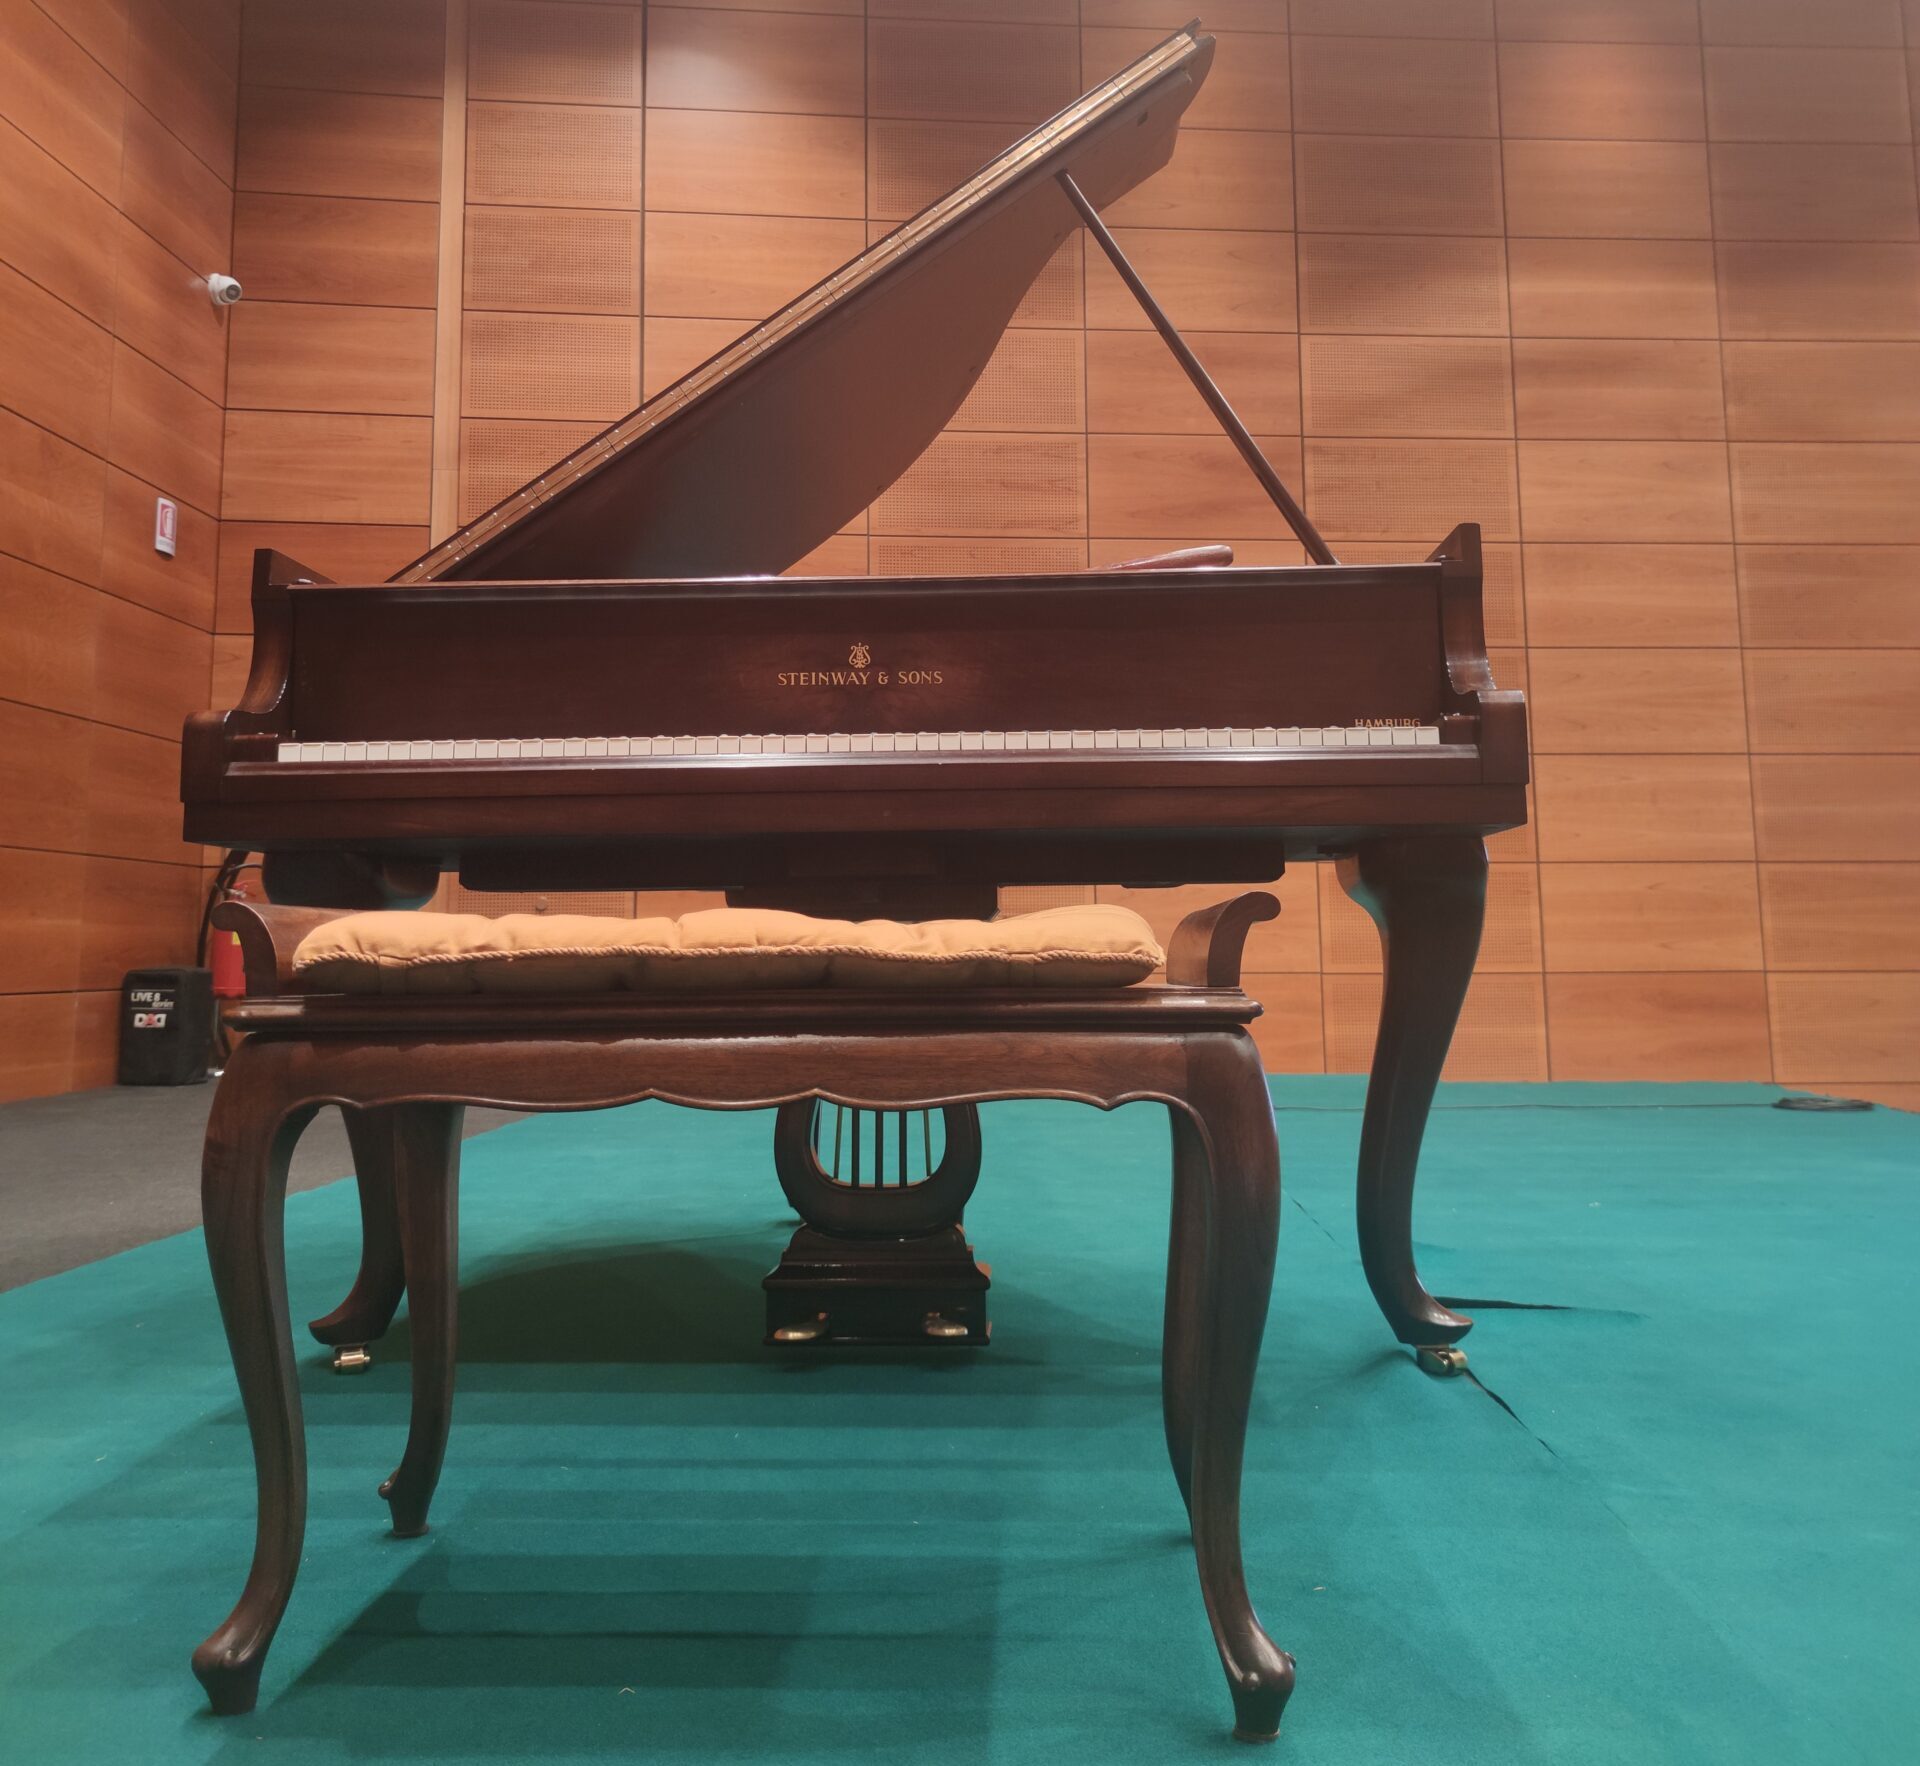 Concorso internazionale di canto “Renata Tebaldi”, il pianoforte dell’artista ospite speciale a San Marino